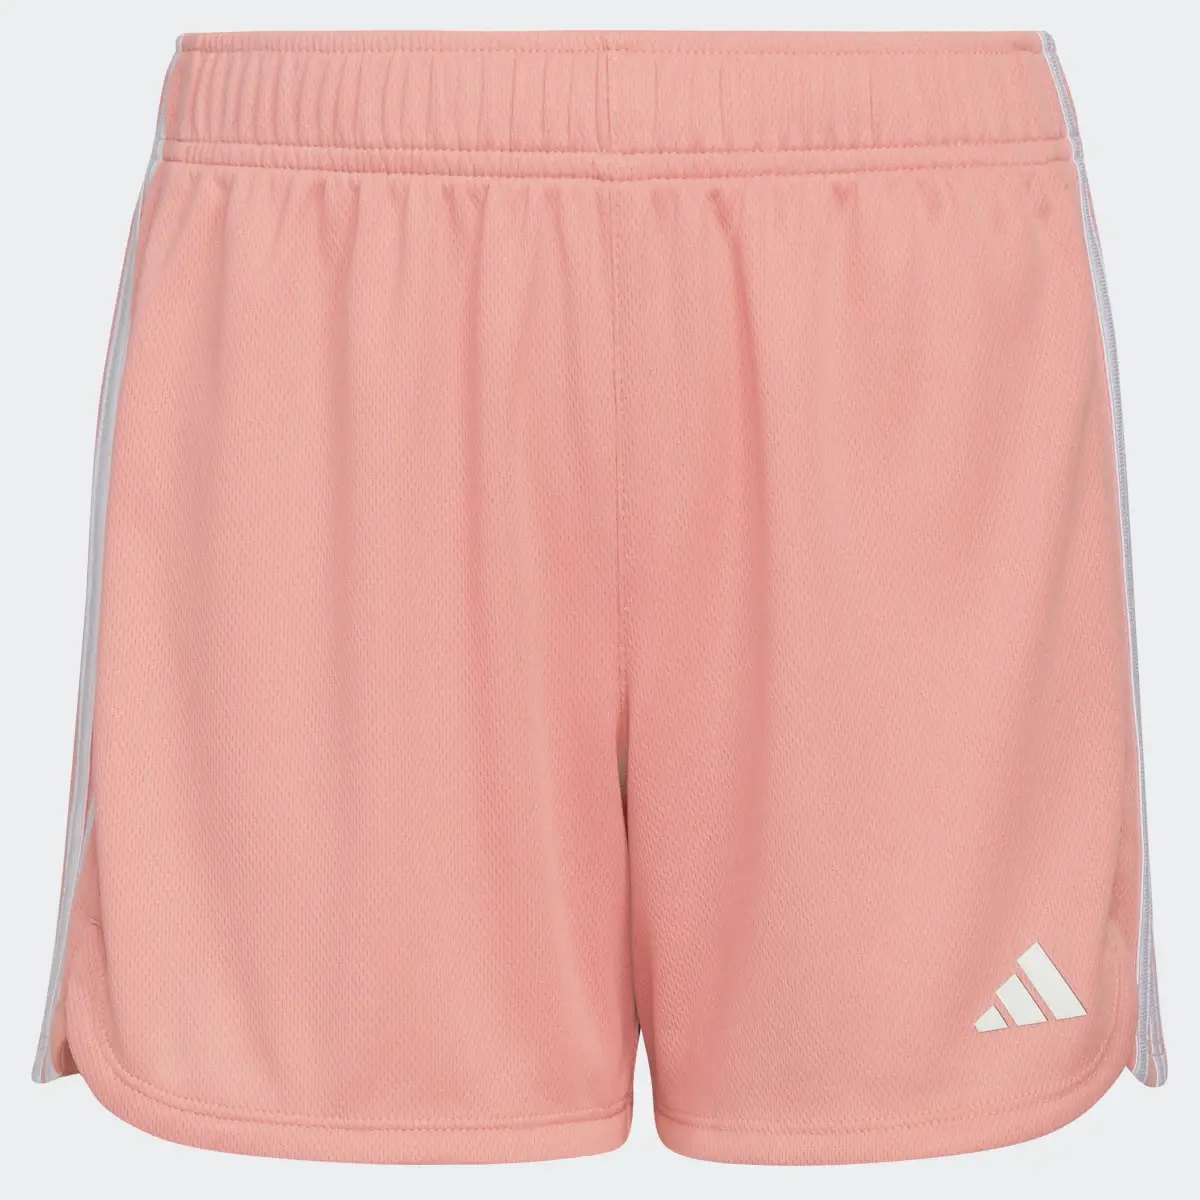 Adidas 3-Stripes Mesh Shorts. 2